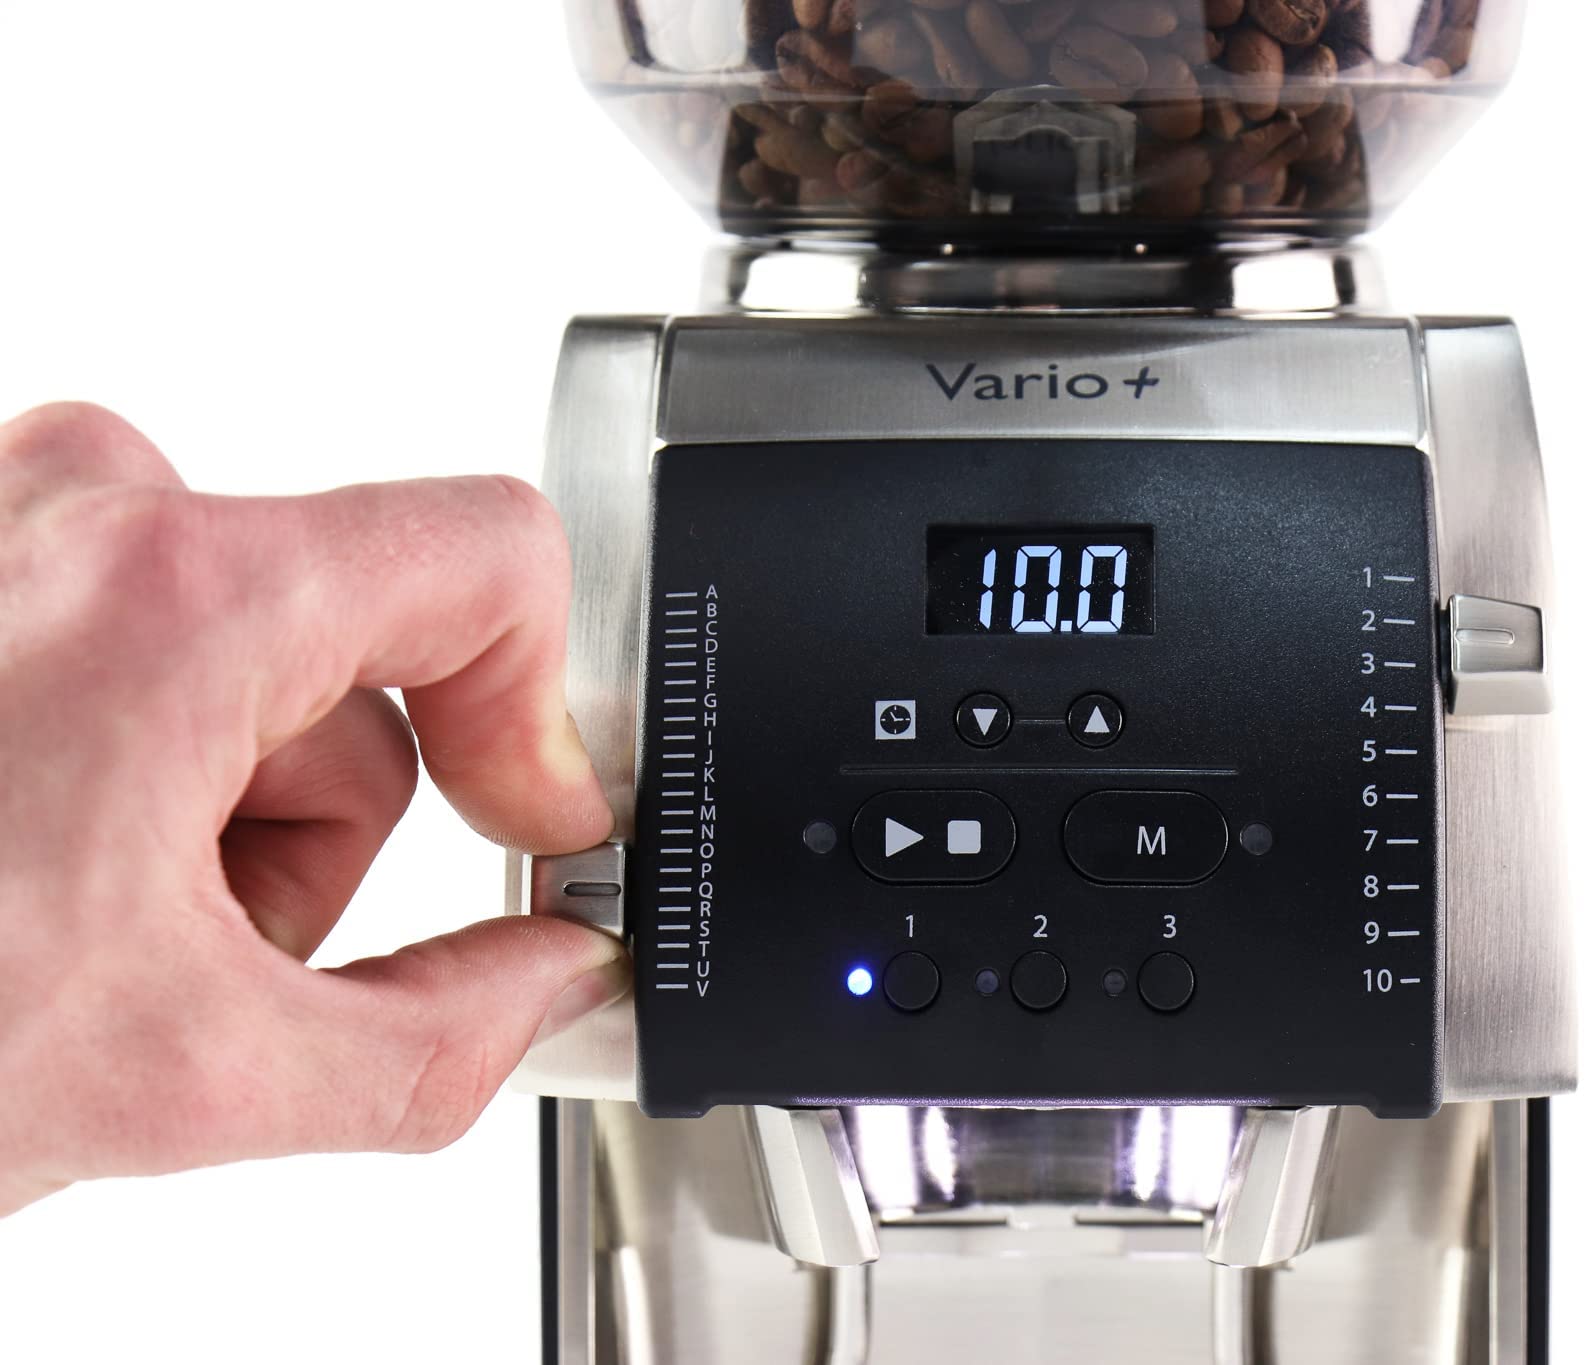 baratza-vario-plus-coffee-and-espresso-grinder-setting-dials